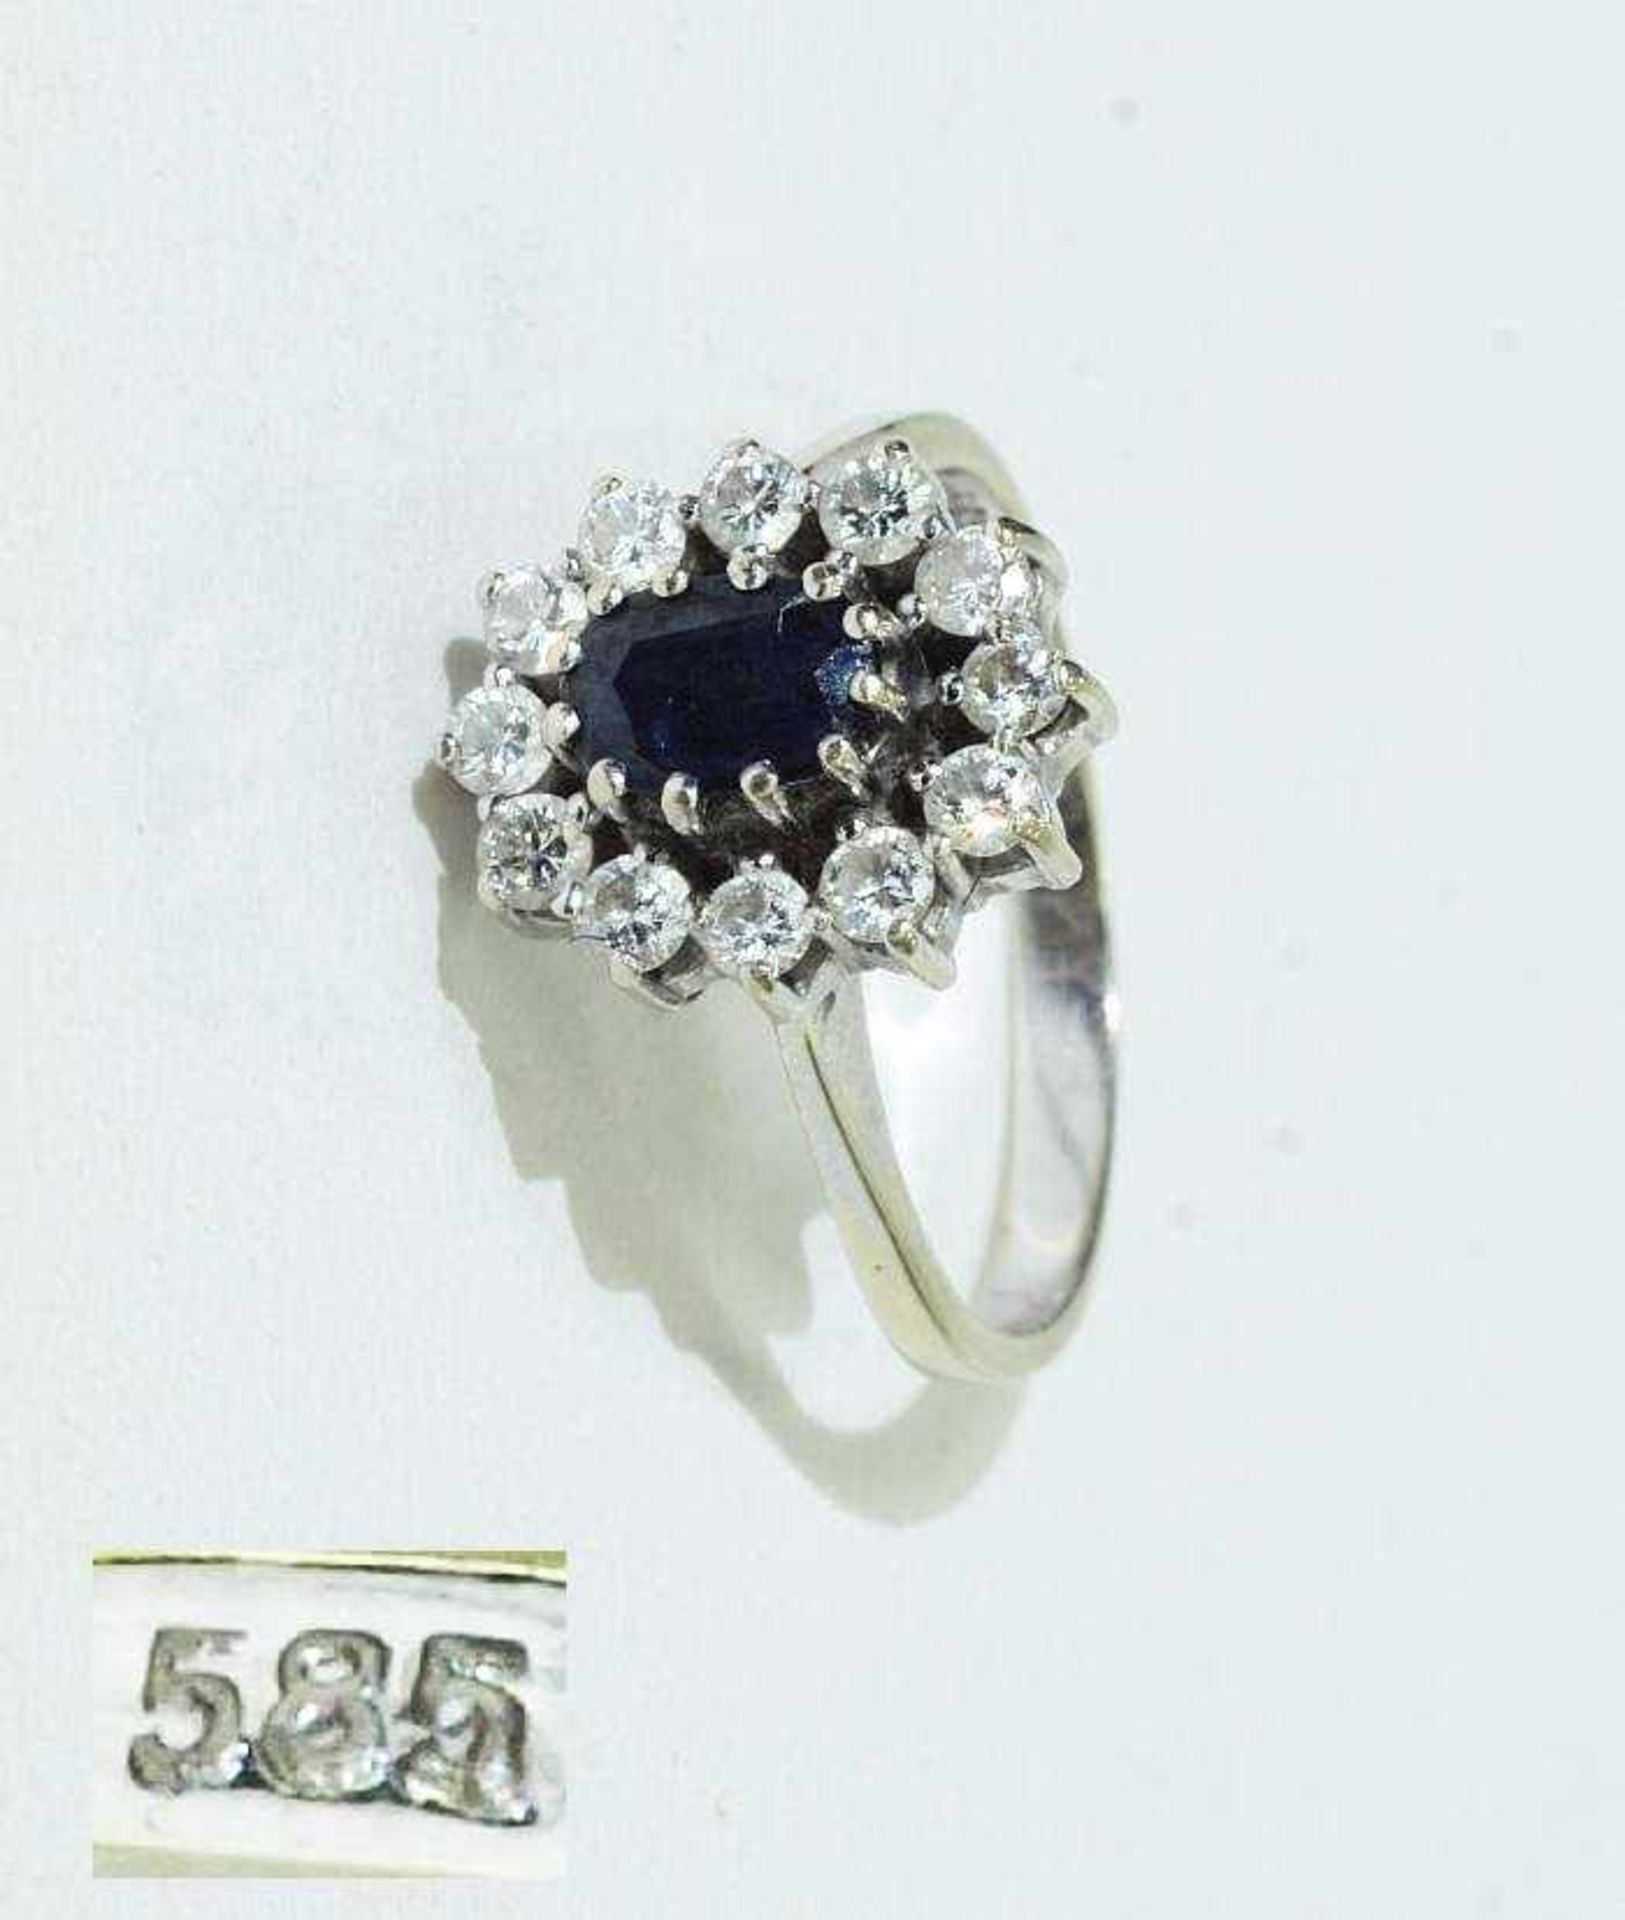 Saphir-Brillant-Ring. Saphir-Brillant-Ring. 585er Weißgold. Mittig Saphir umgeben von 12